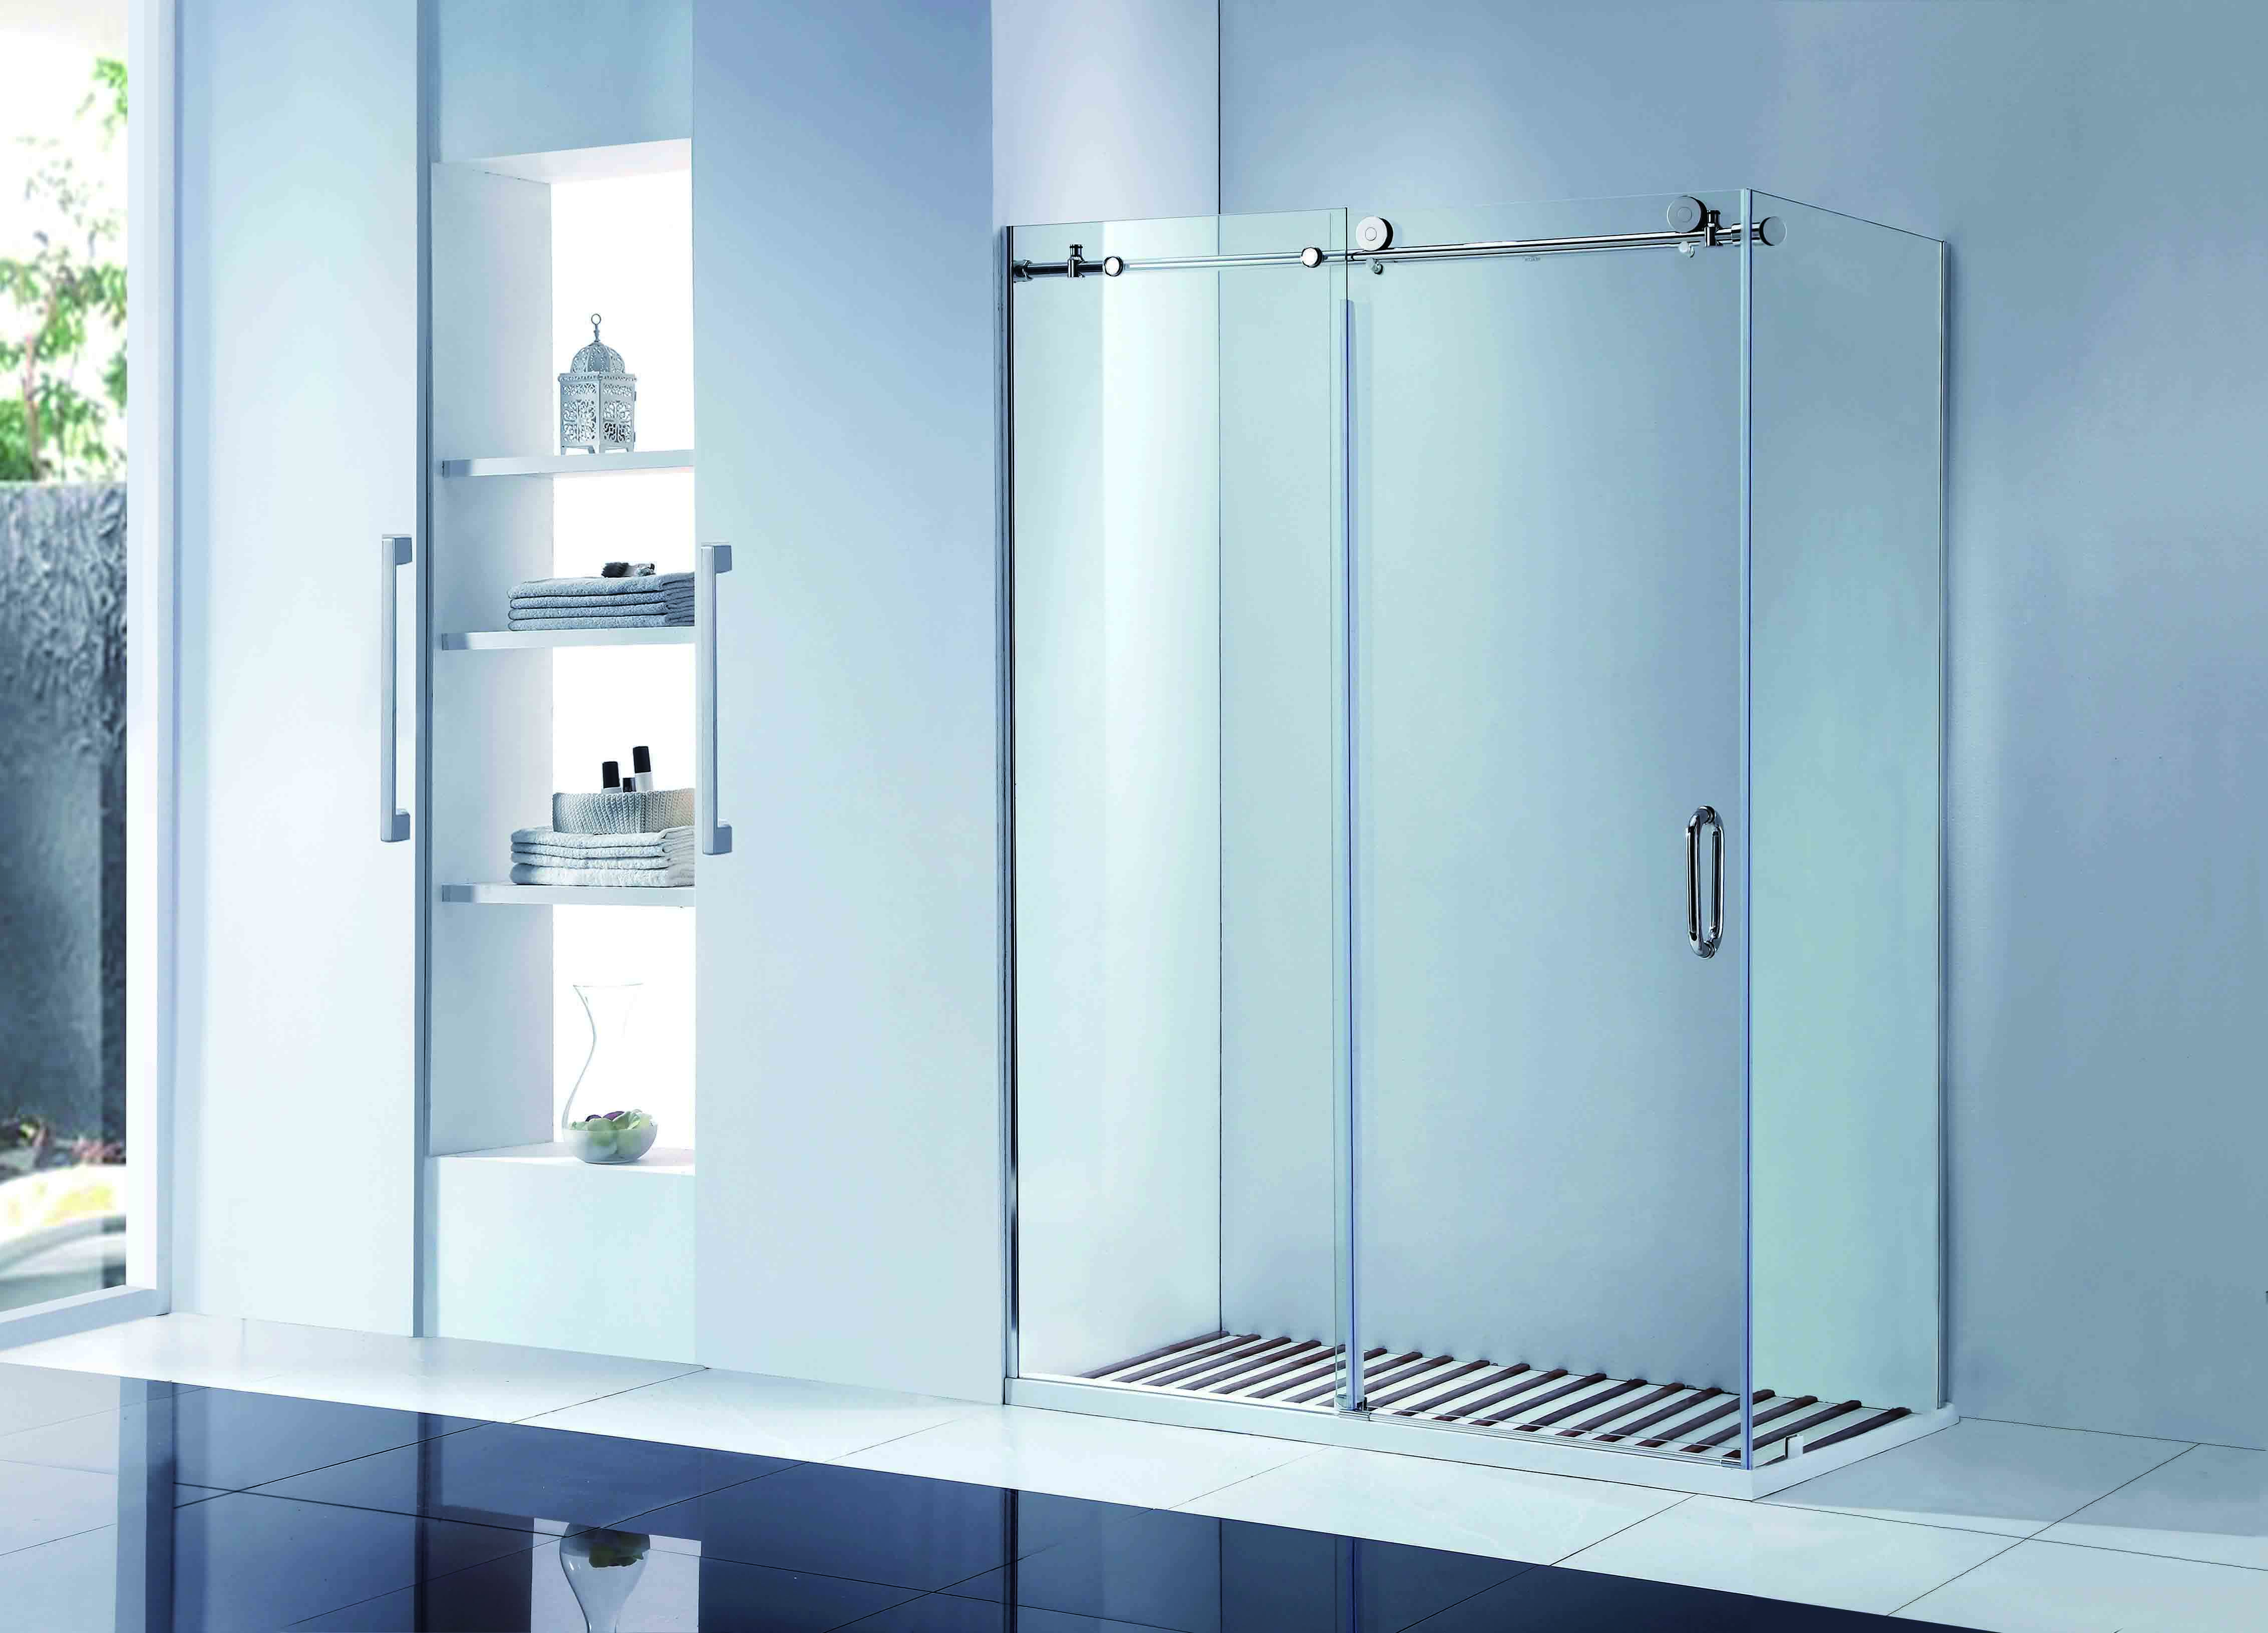 CBM bathroom glass door manufacturers for flats-2